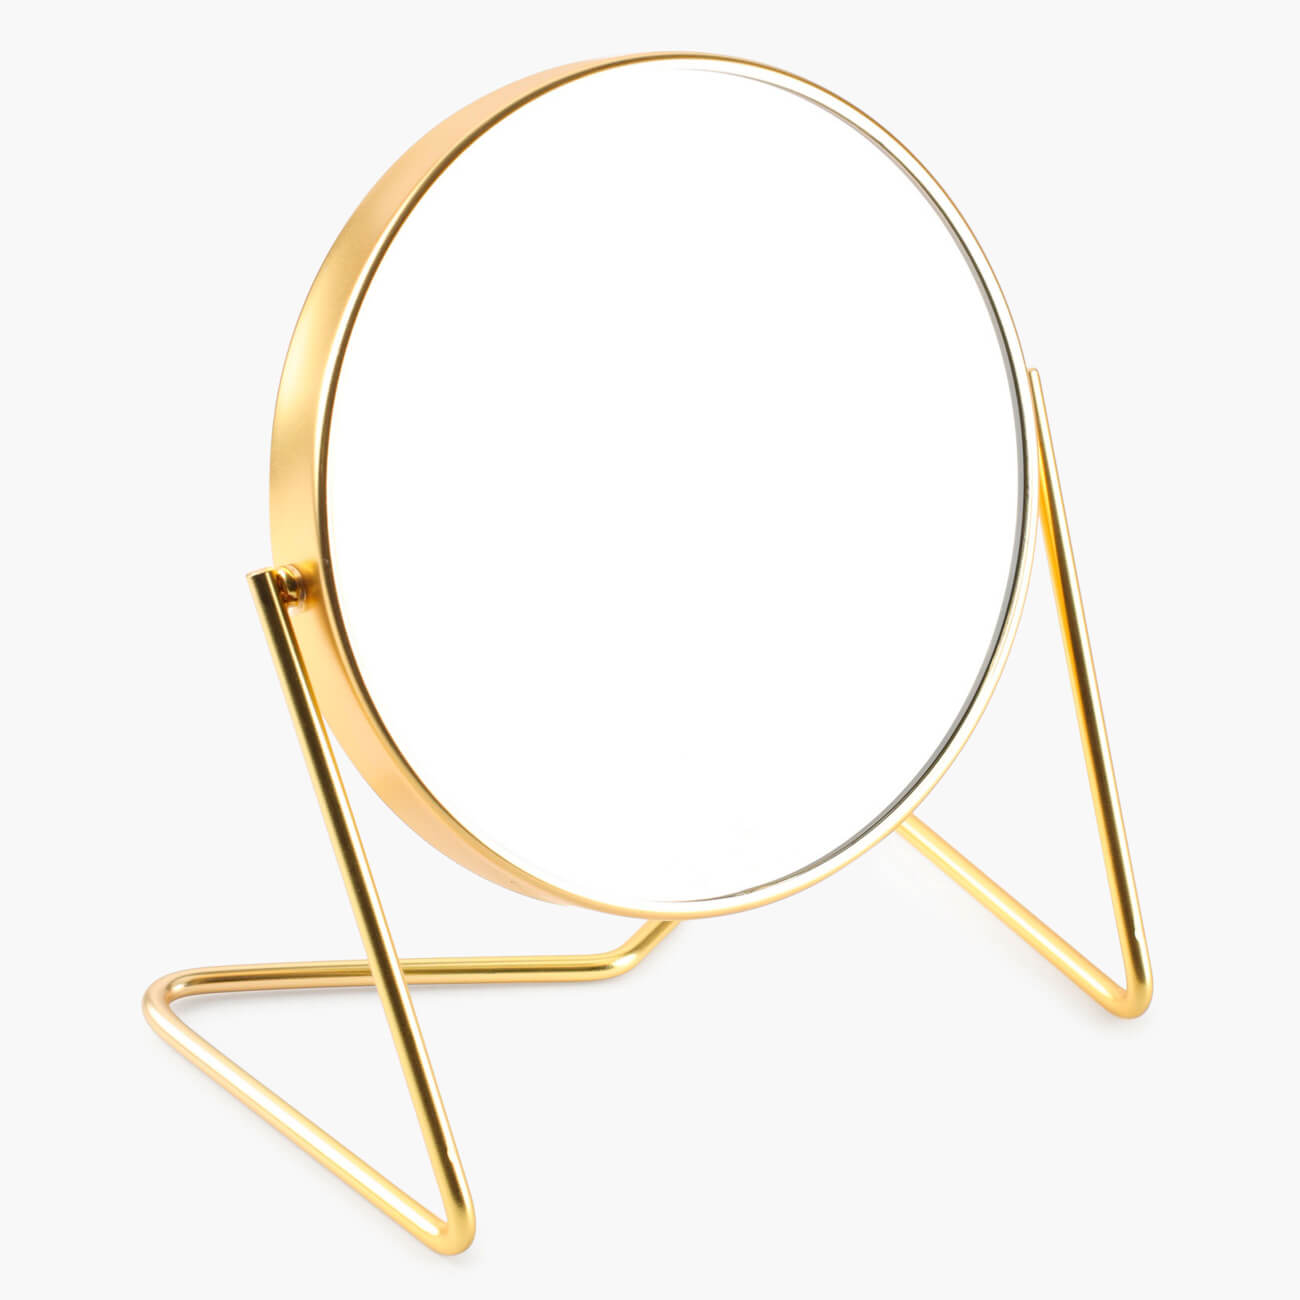 Зеркало настольное, 18 см, двустороннее, металл, круглое, золотистое, Trend двустороннее косметическое зеркало unistor